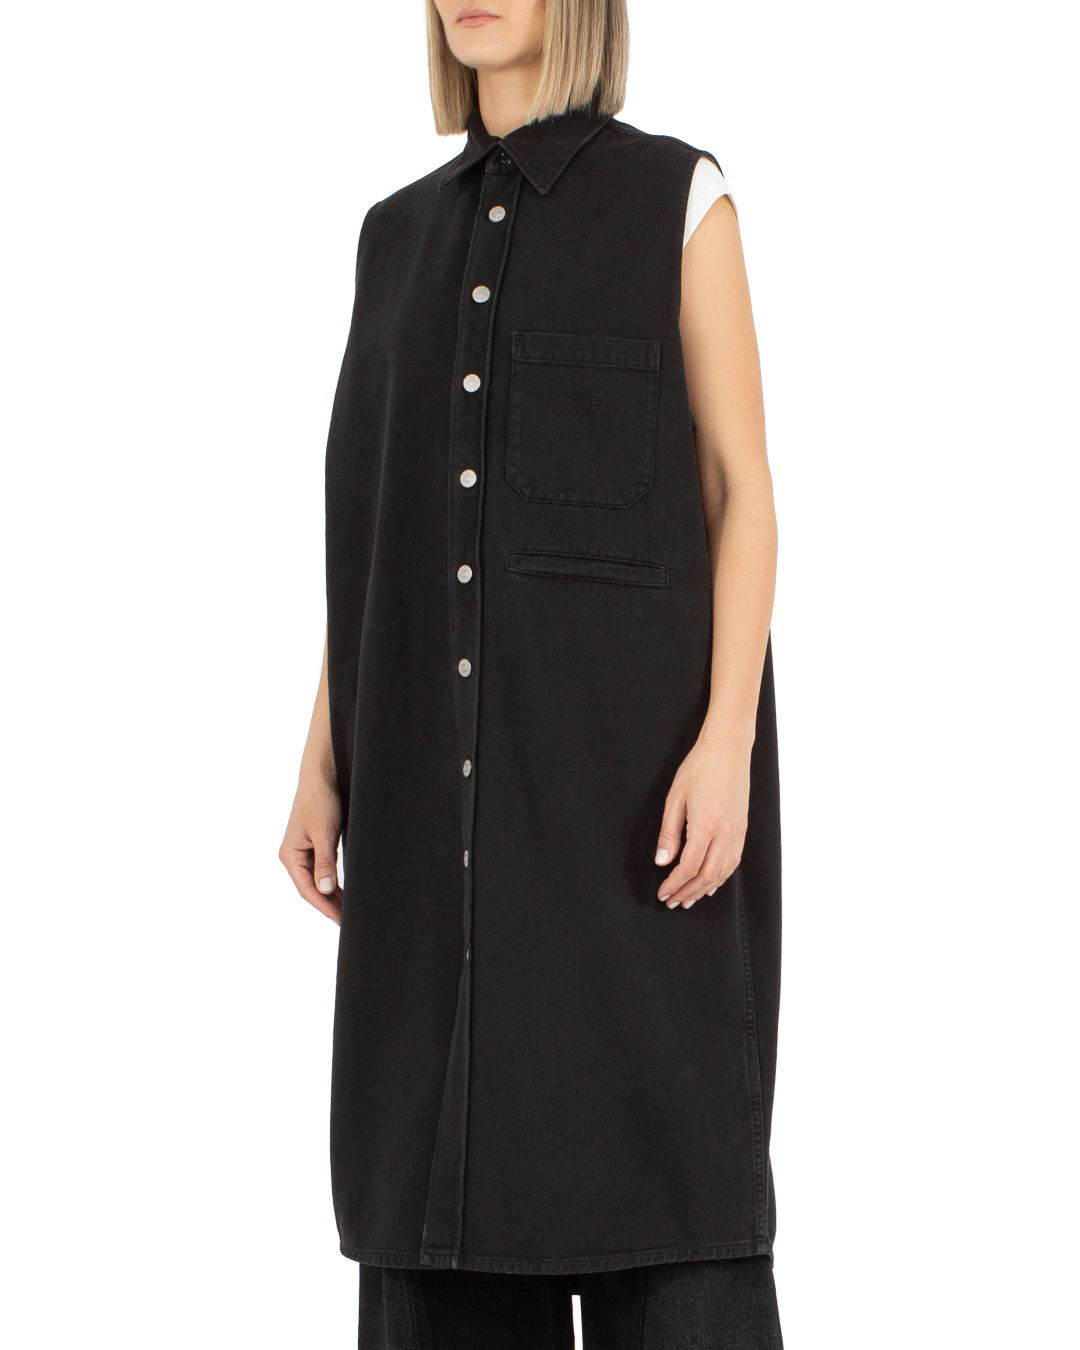 

джинсовое платье oversize MM6 Maison Margiela, Черный, S62DG0016 черный 40